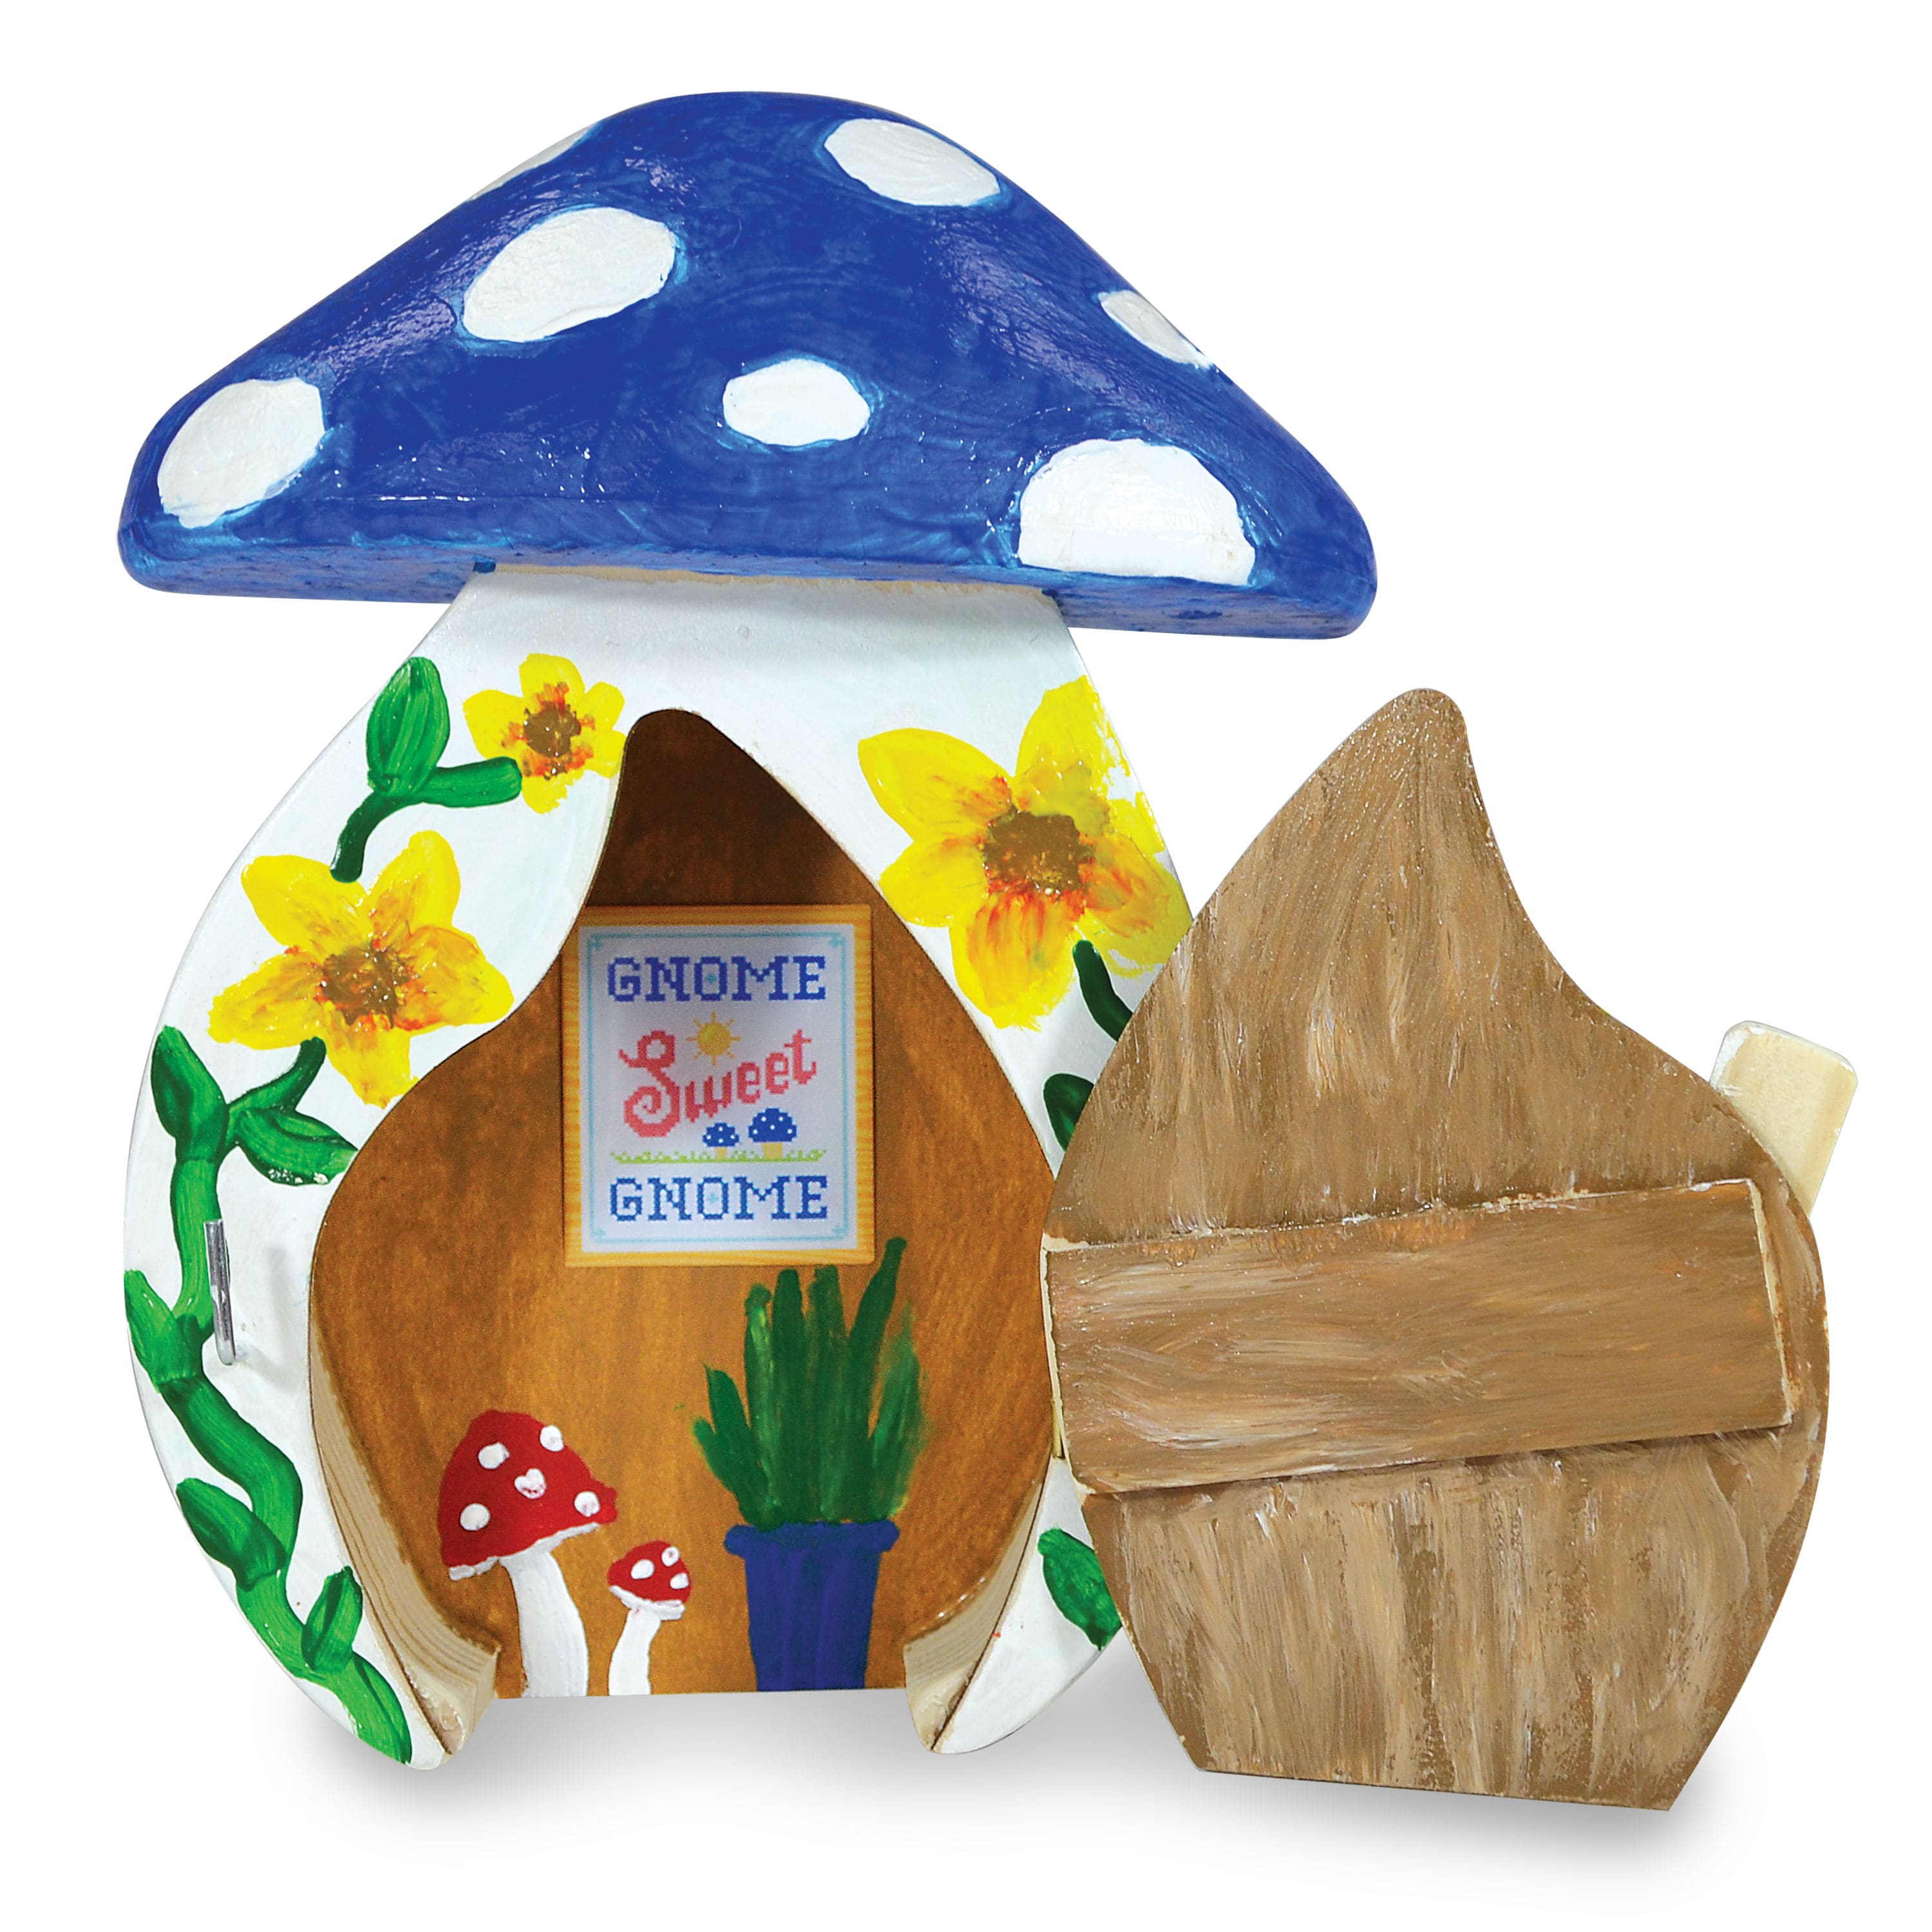 Creativity for Kids&#xAE; Gnome Garden Door